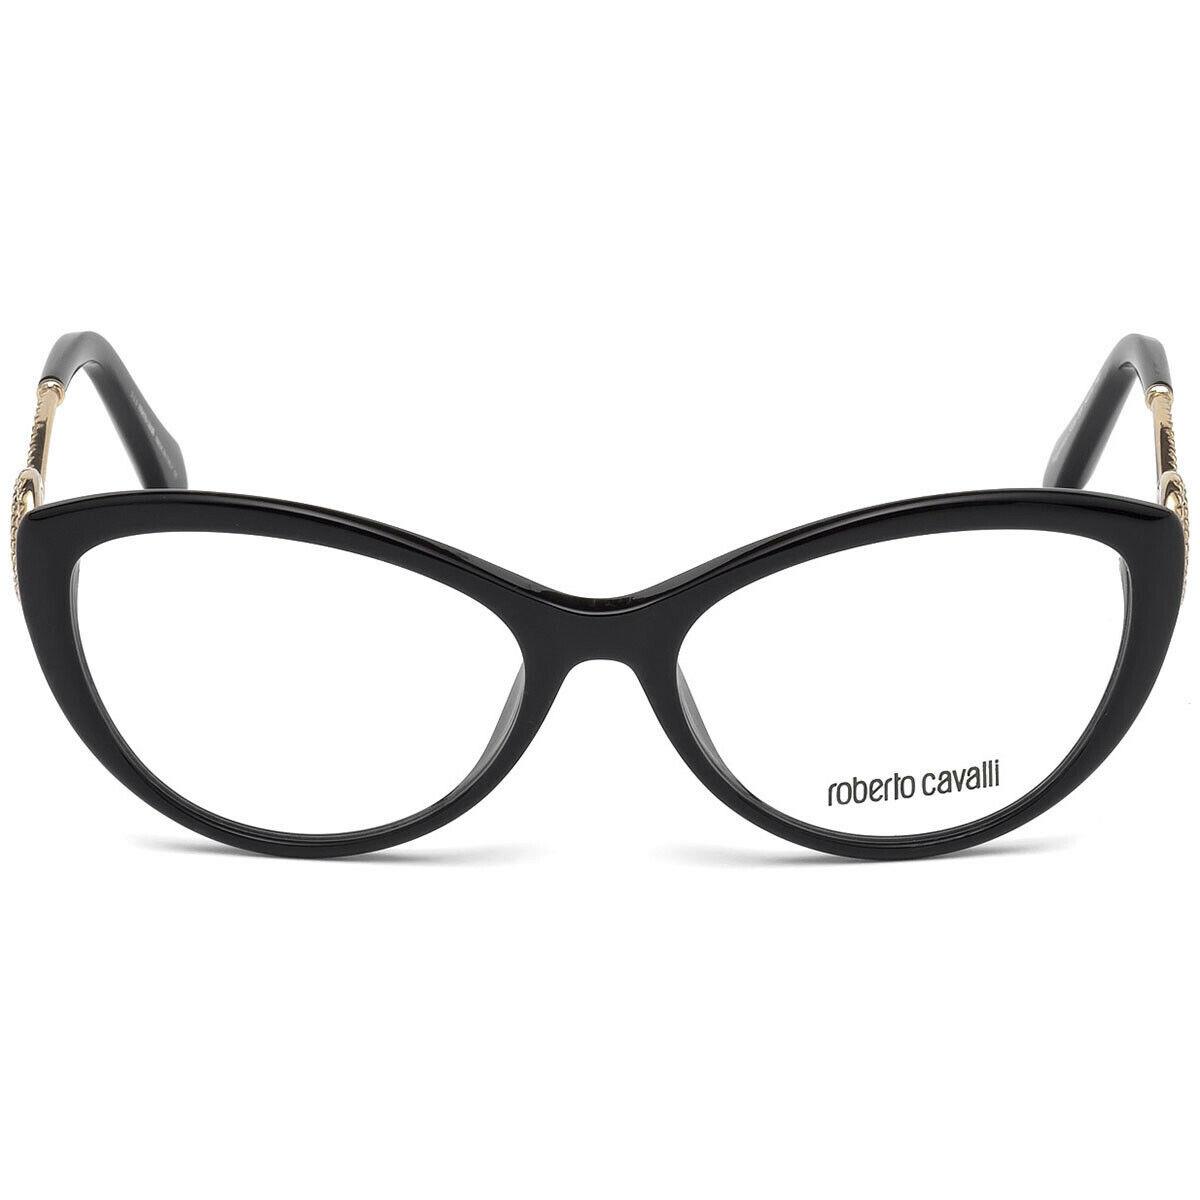 Roberto Cavalli Argentario RC 5009 Black 001 Eyeglasses Frame 54-16-140 Cat Eye - Black 001, Frame: Black 001, Lens: